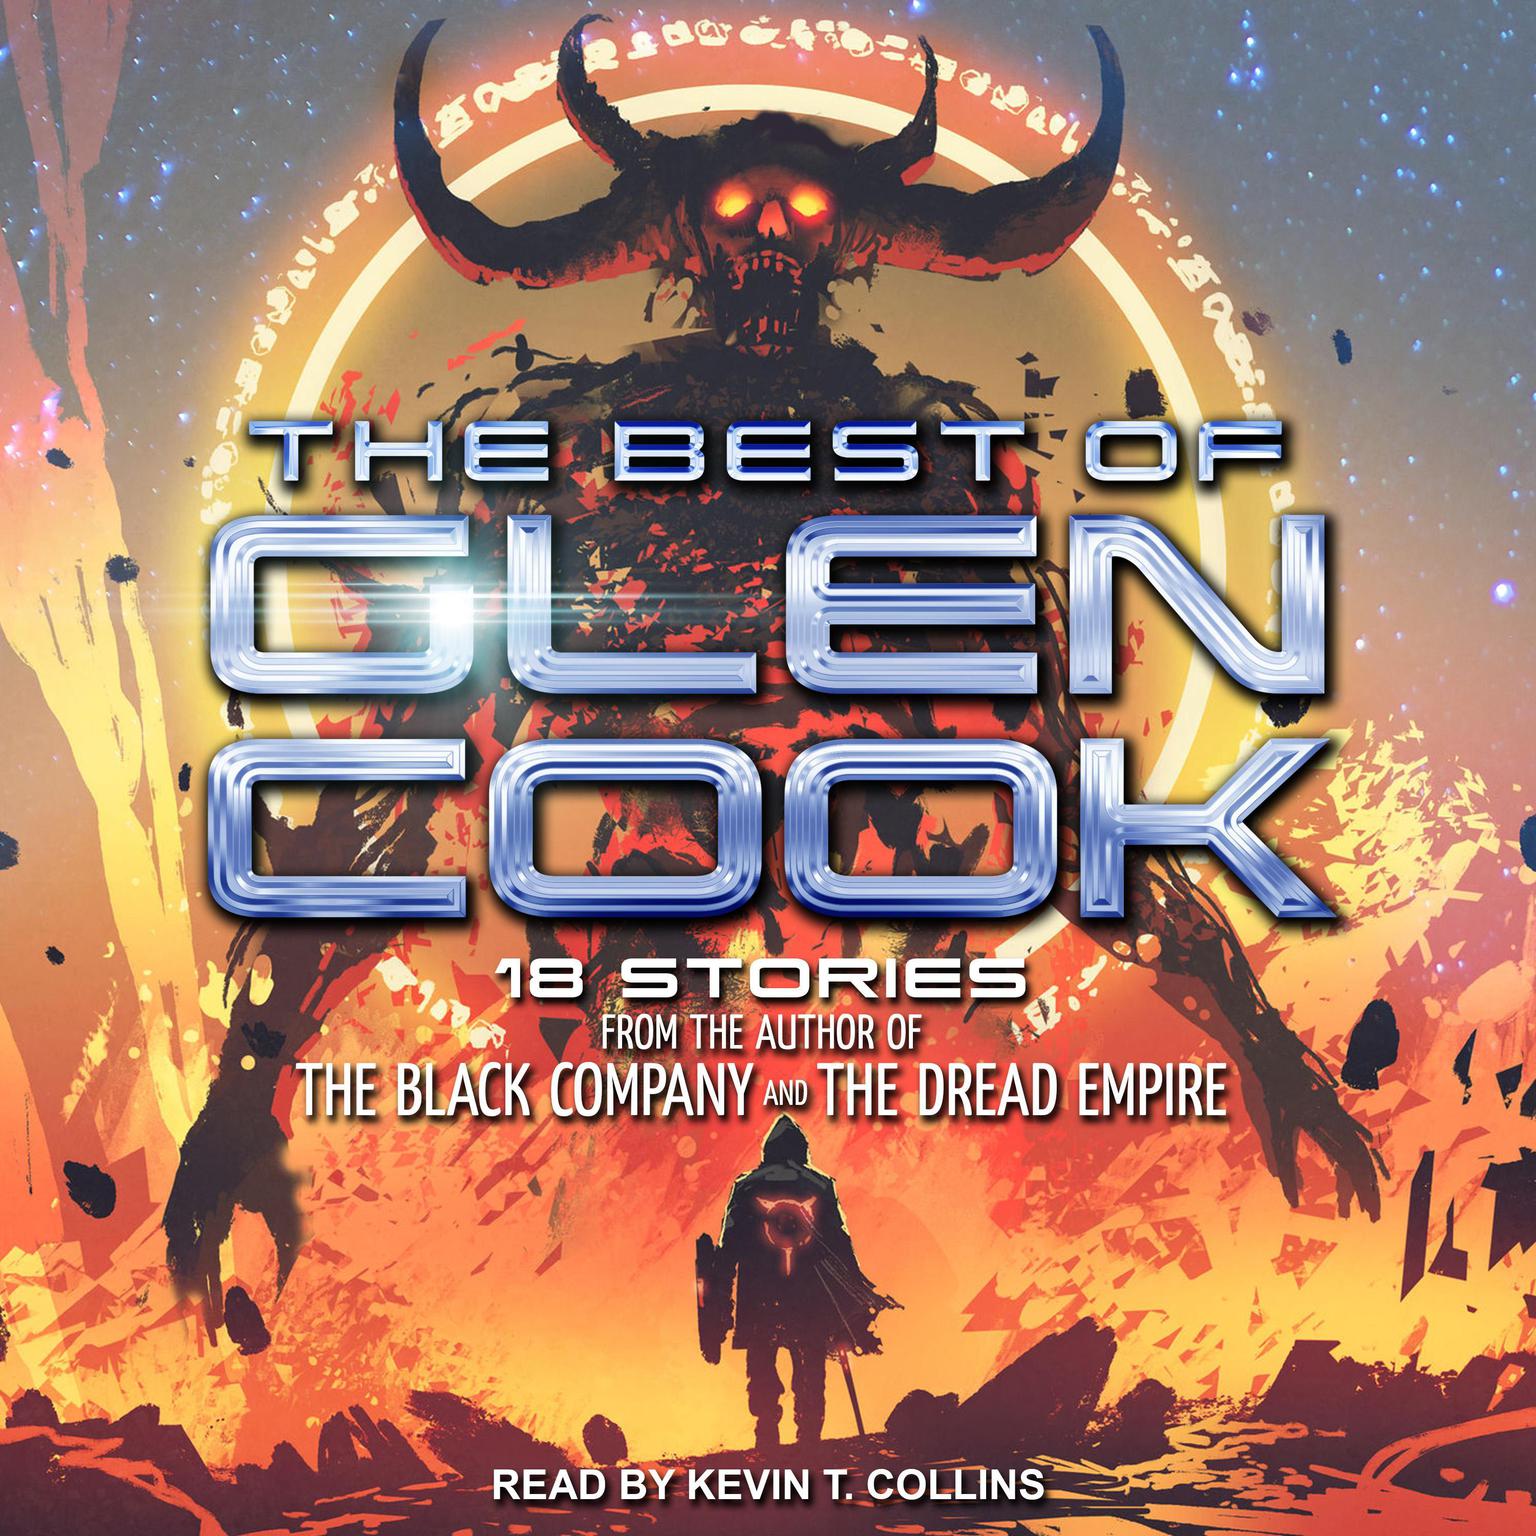 The Best of Glen Cook Audiobook, by Glen Cook